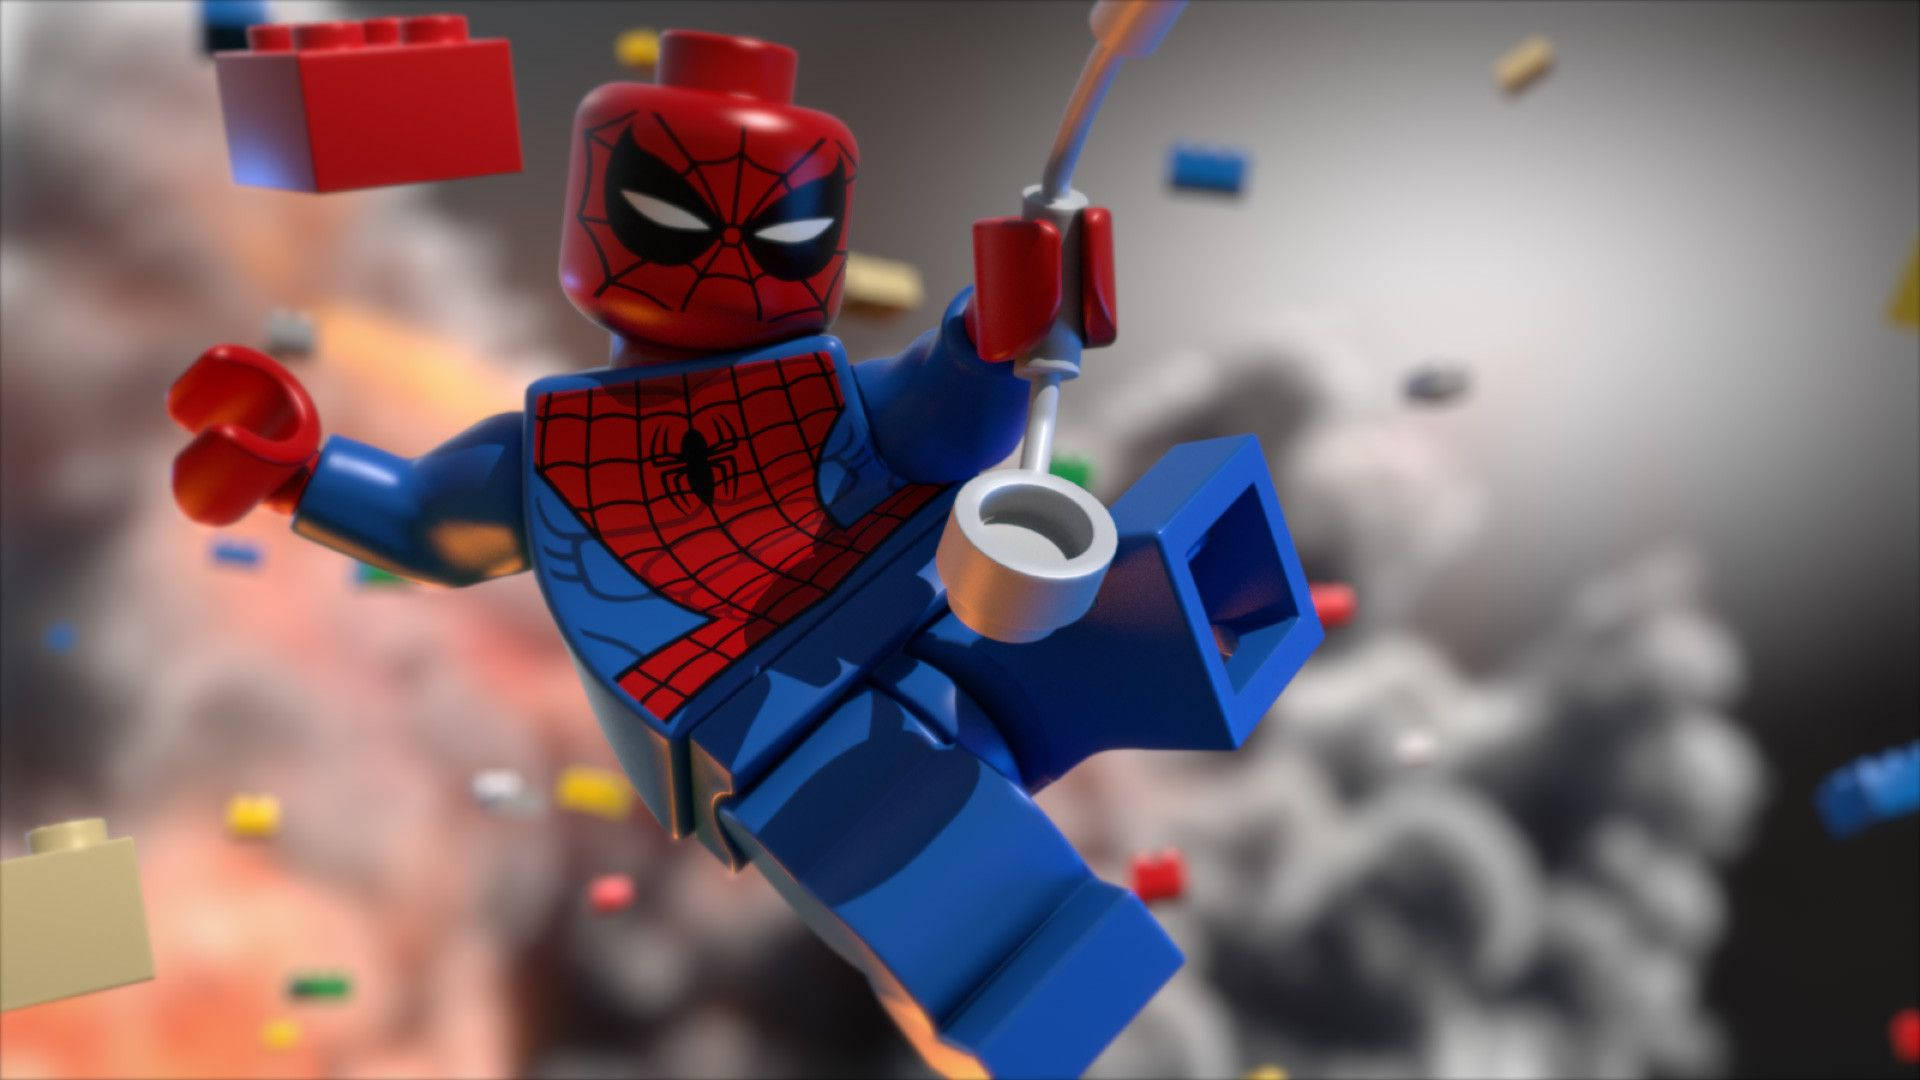 Papelde Parede Do Lego Toy Homem-aranha Homem De Ferro. Papel de Parede